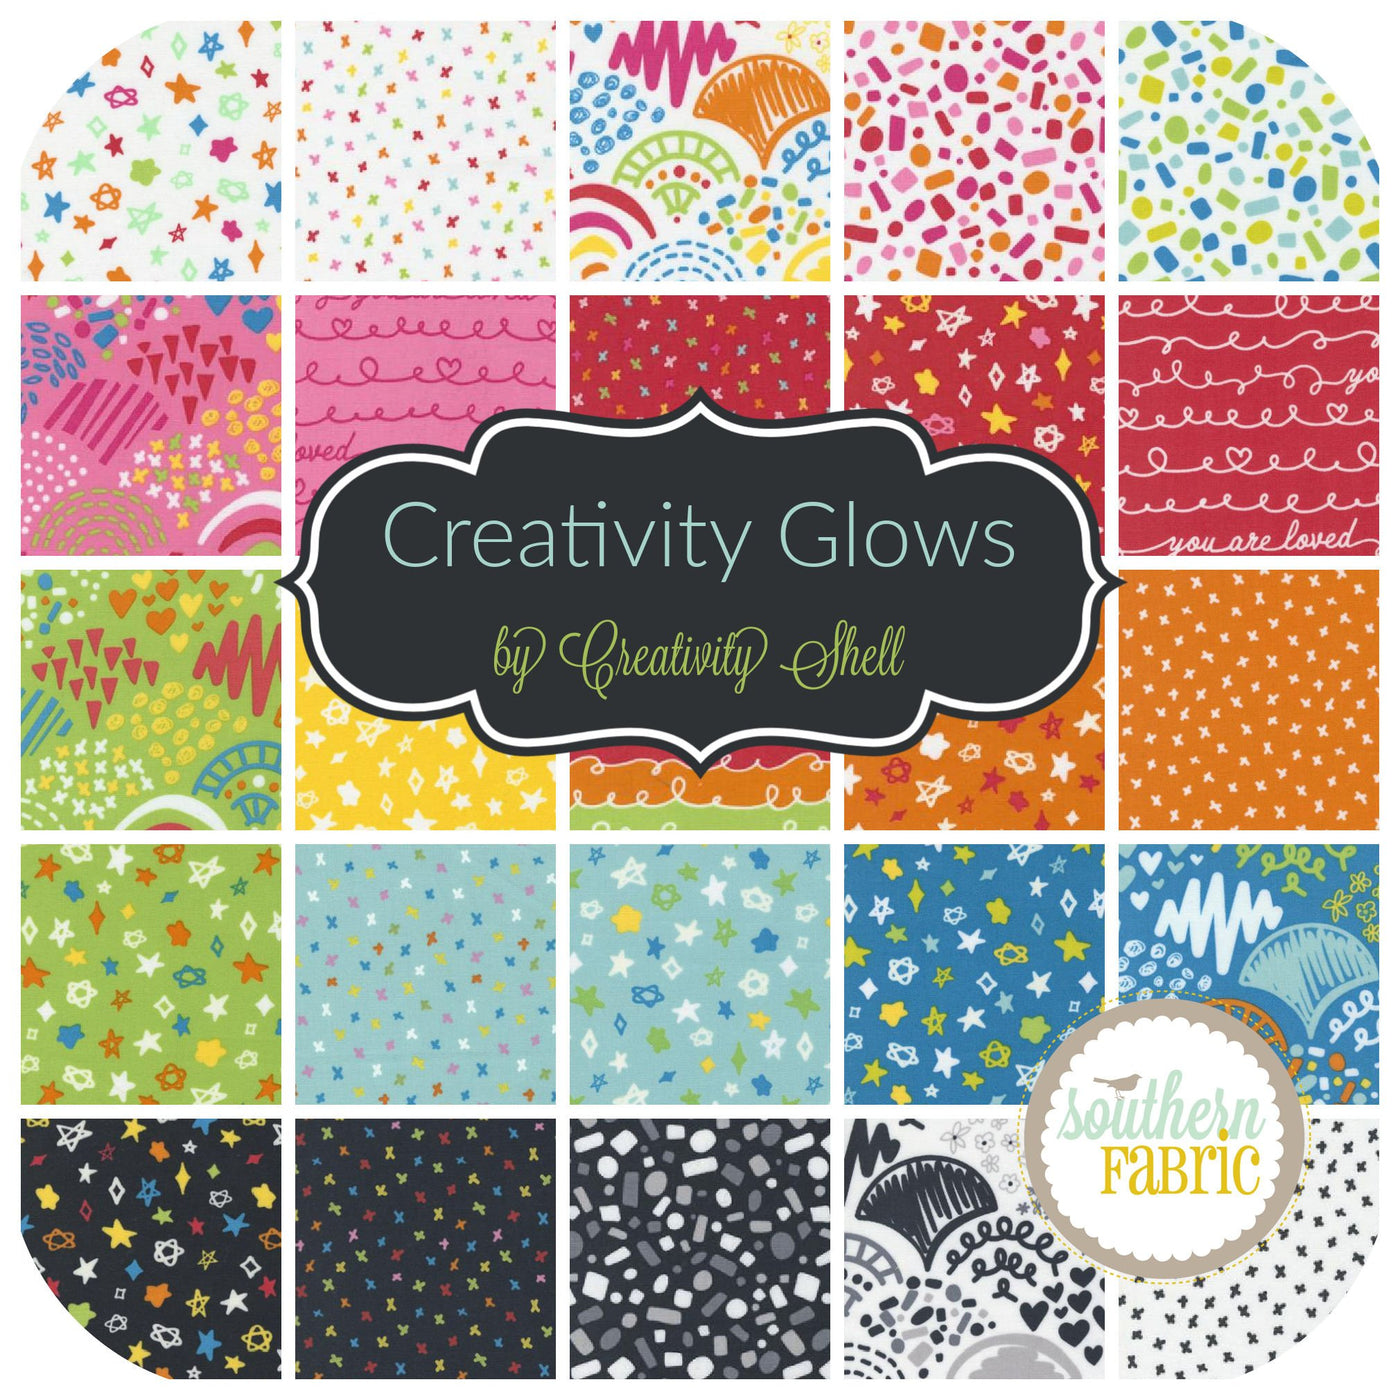 Creativity Glows Jelly Roll (40 pcs) by Creativity Shell for Moda (47530JR)